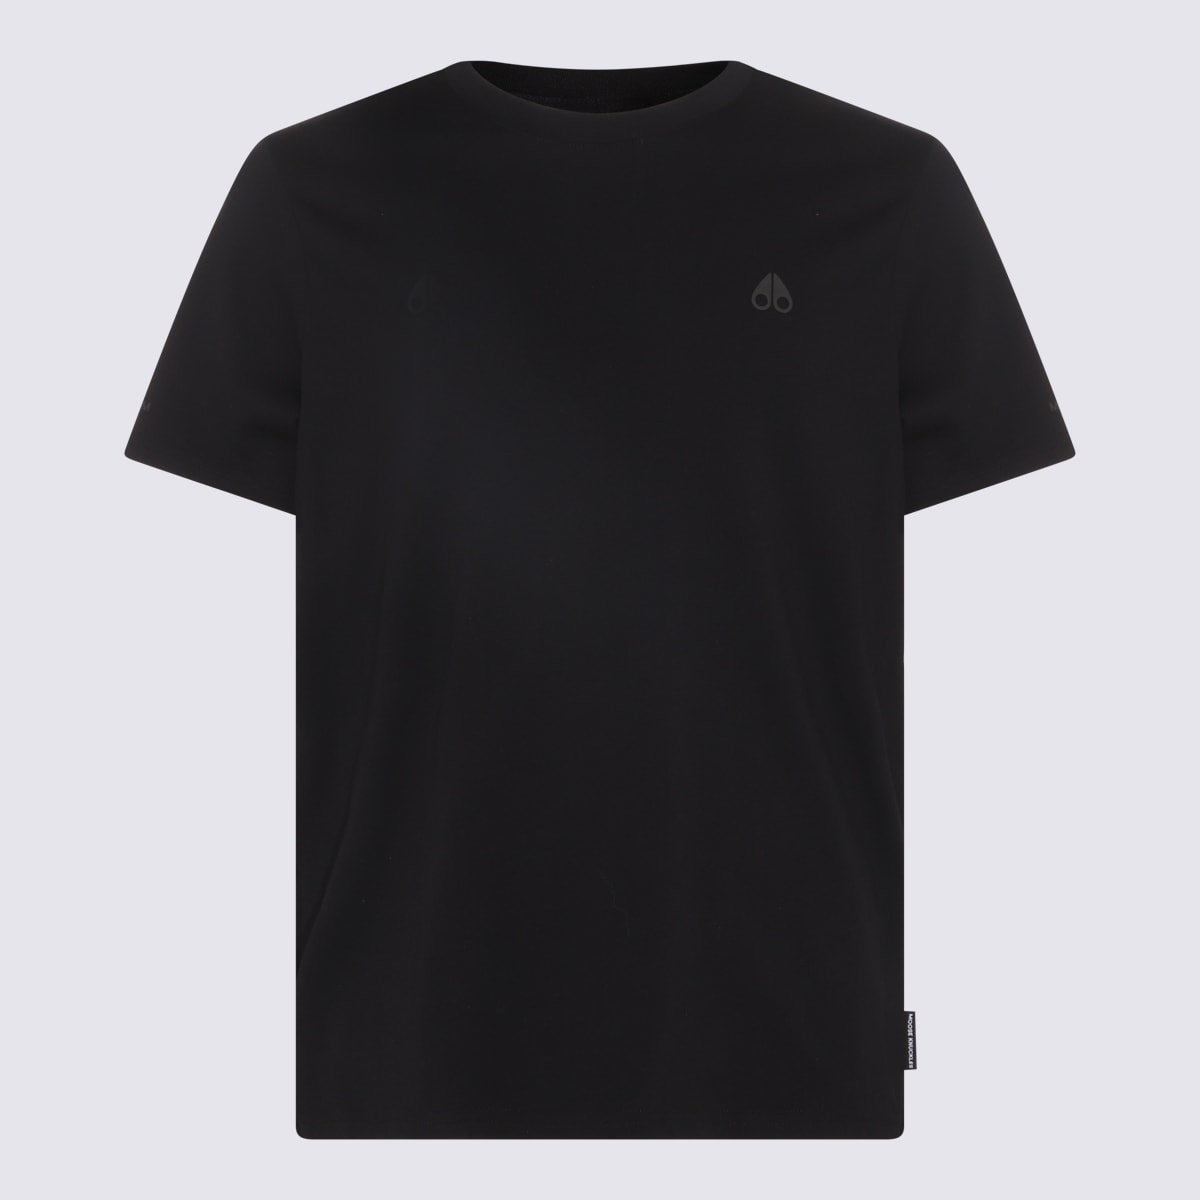 Shop Moose Knuckles Black Cotton T-shirt